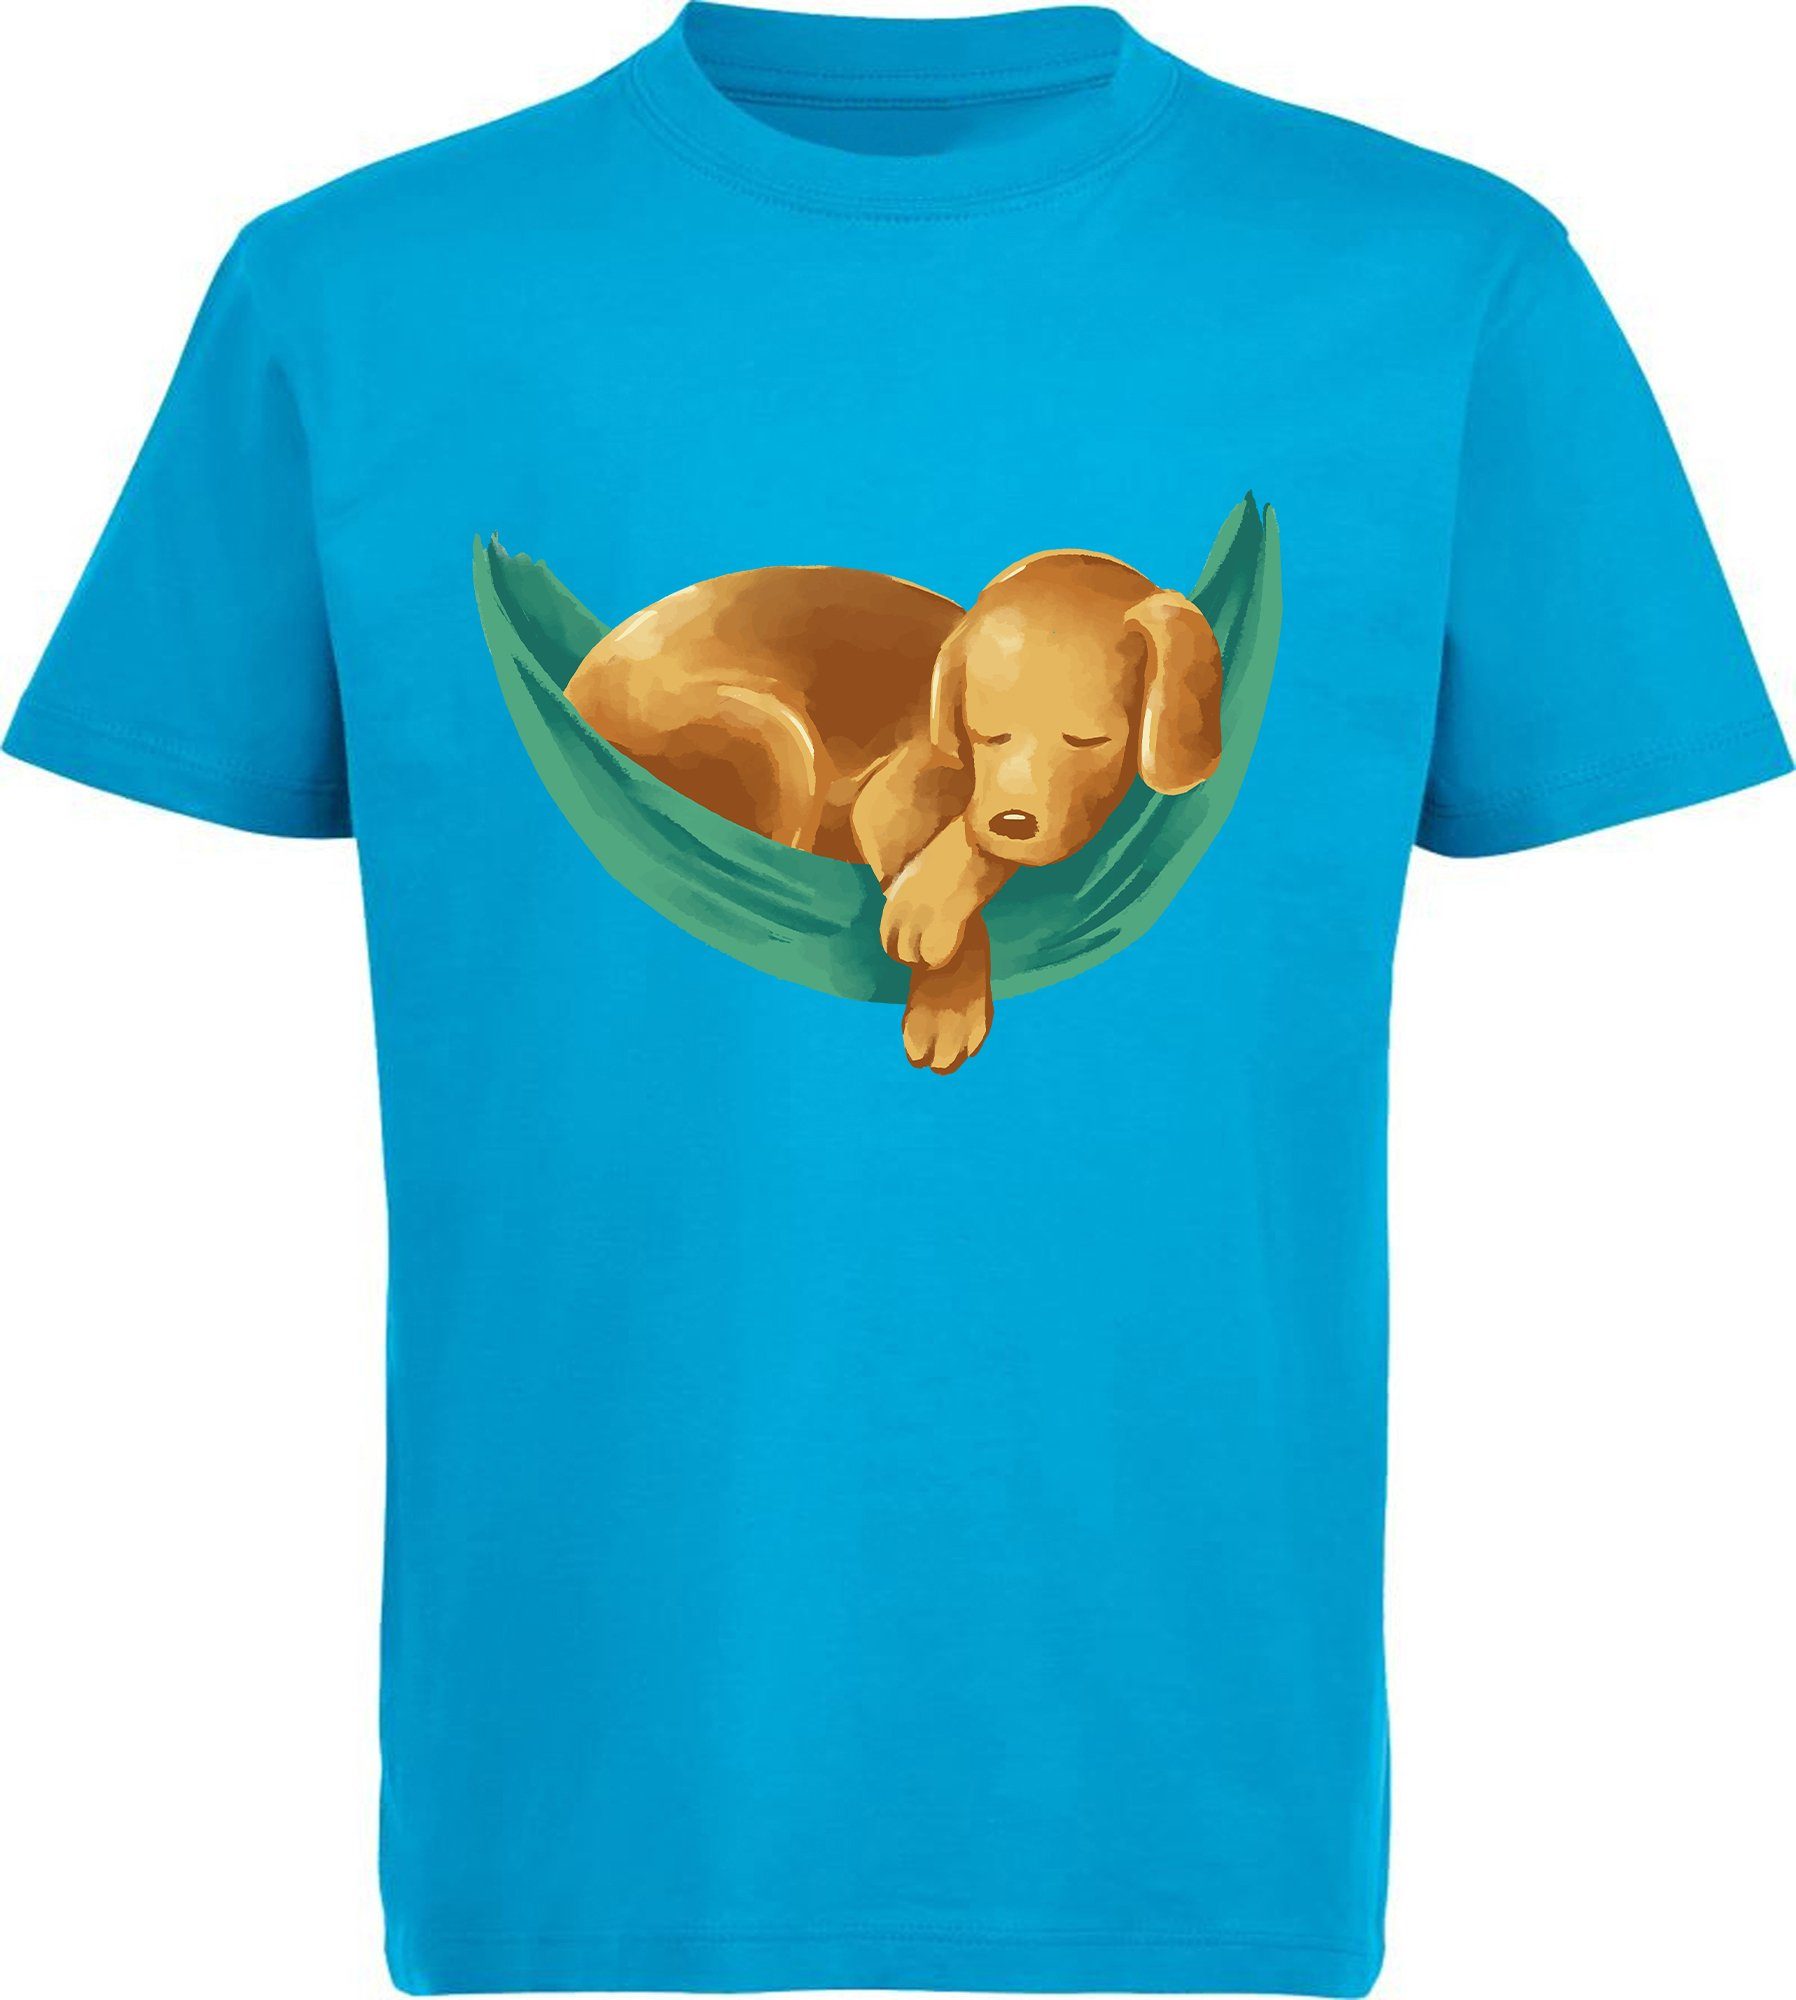 MyDesign24 T-Shirt Kinder - bedruckt Aufdruck, in Hängematte Baumwollshirt Labrador blau aqua mit i245 Hunde Shirt Print Welpe